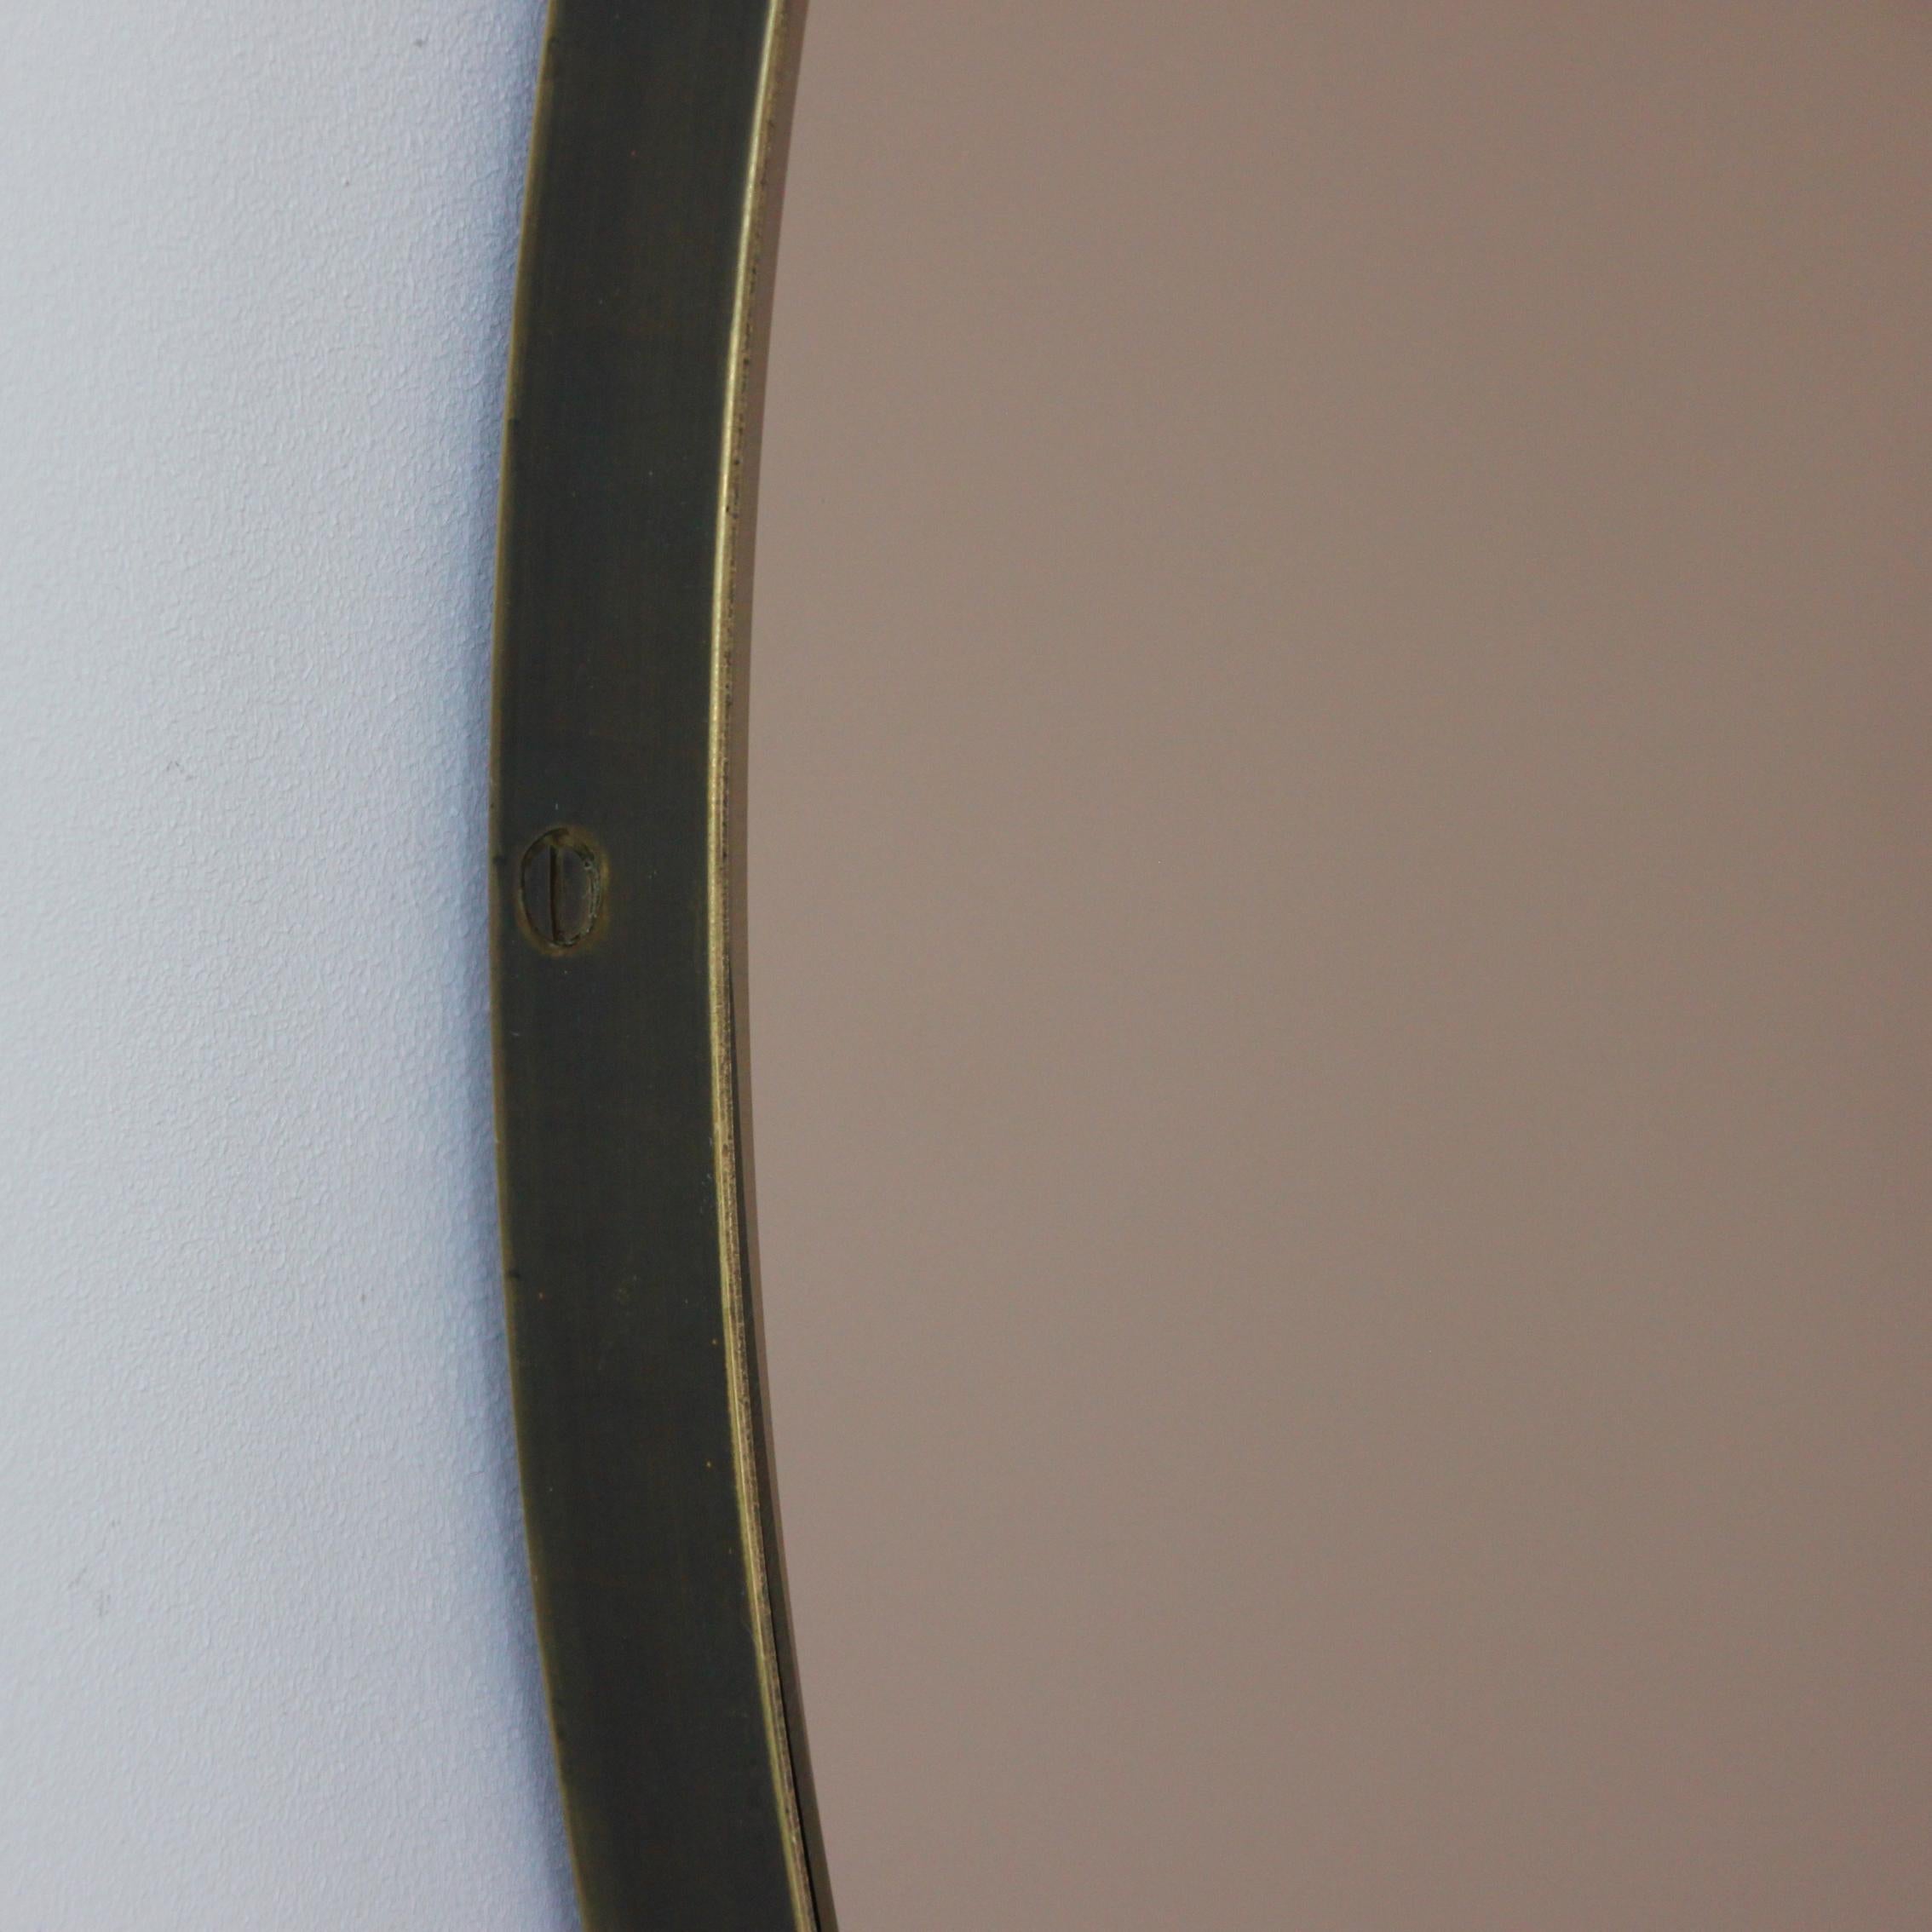 Miroir rond Orbis™ contemporain teinté bronze avec un élégant cadre en laiton à la finition patinée bronze. Conçu et fabriqué à la main à Londres, au Royaume-Uni.

Les miroirs de taille moyenne, grande et extra-large (60, 80 et 100 cm) sont équipés